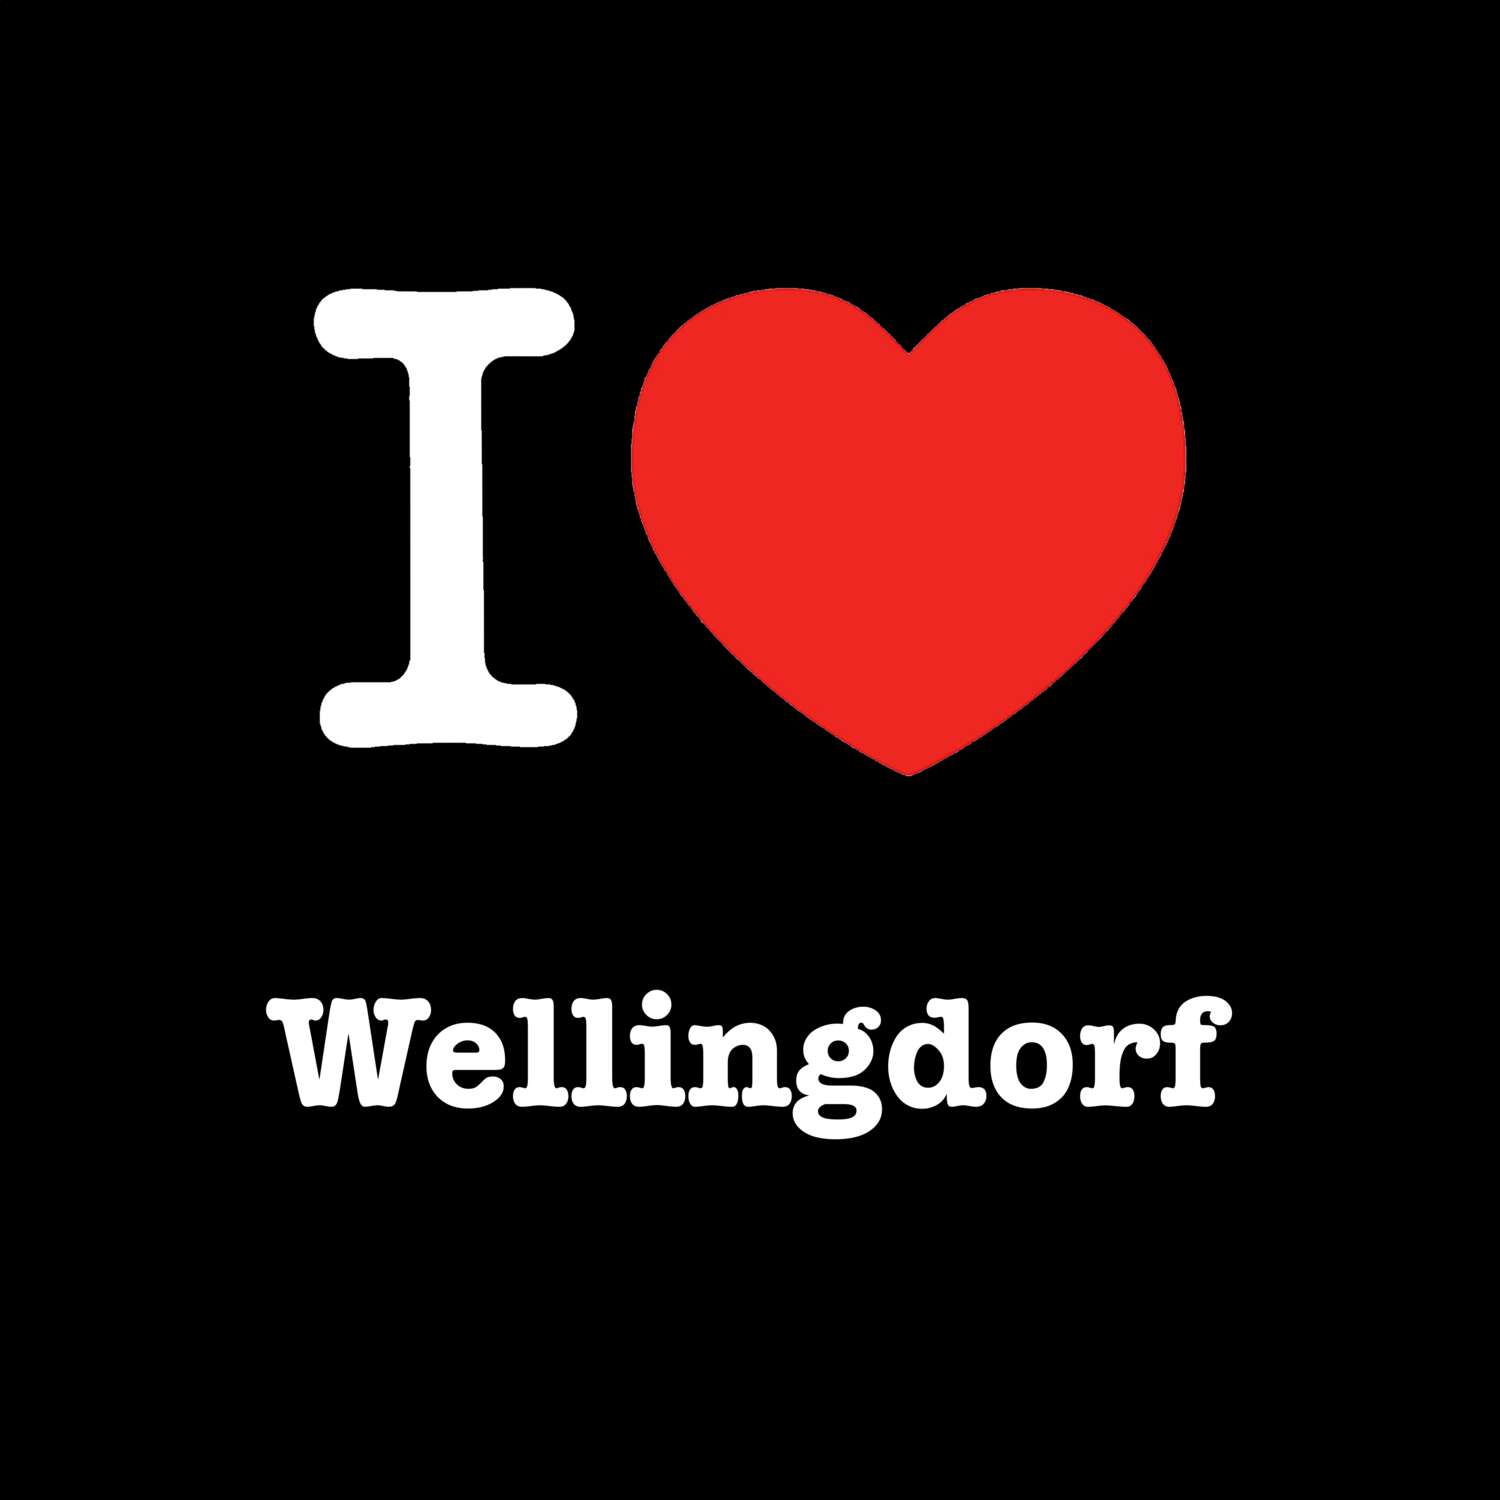 Wellingdorf T-Shirt »I love«